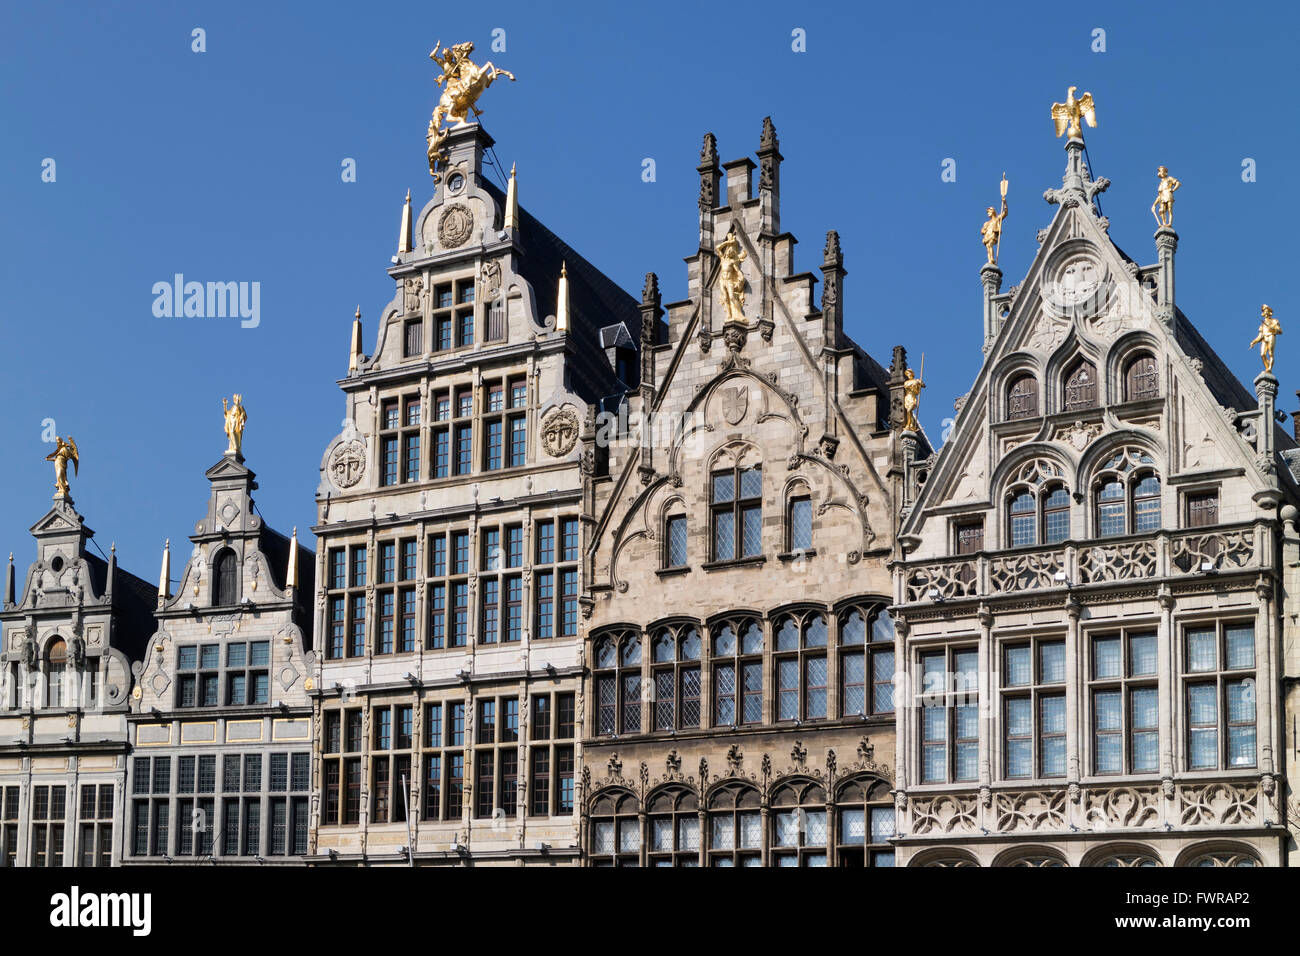 Rangée de façades de maisons de guilde flamande sur la Grand-Place d'Anvers, Belgique Banque D'Images